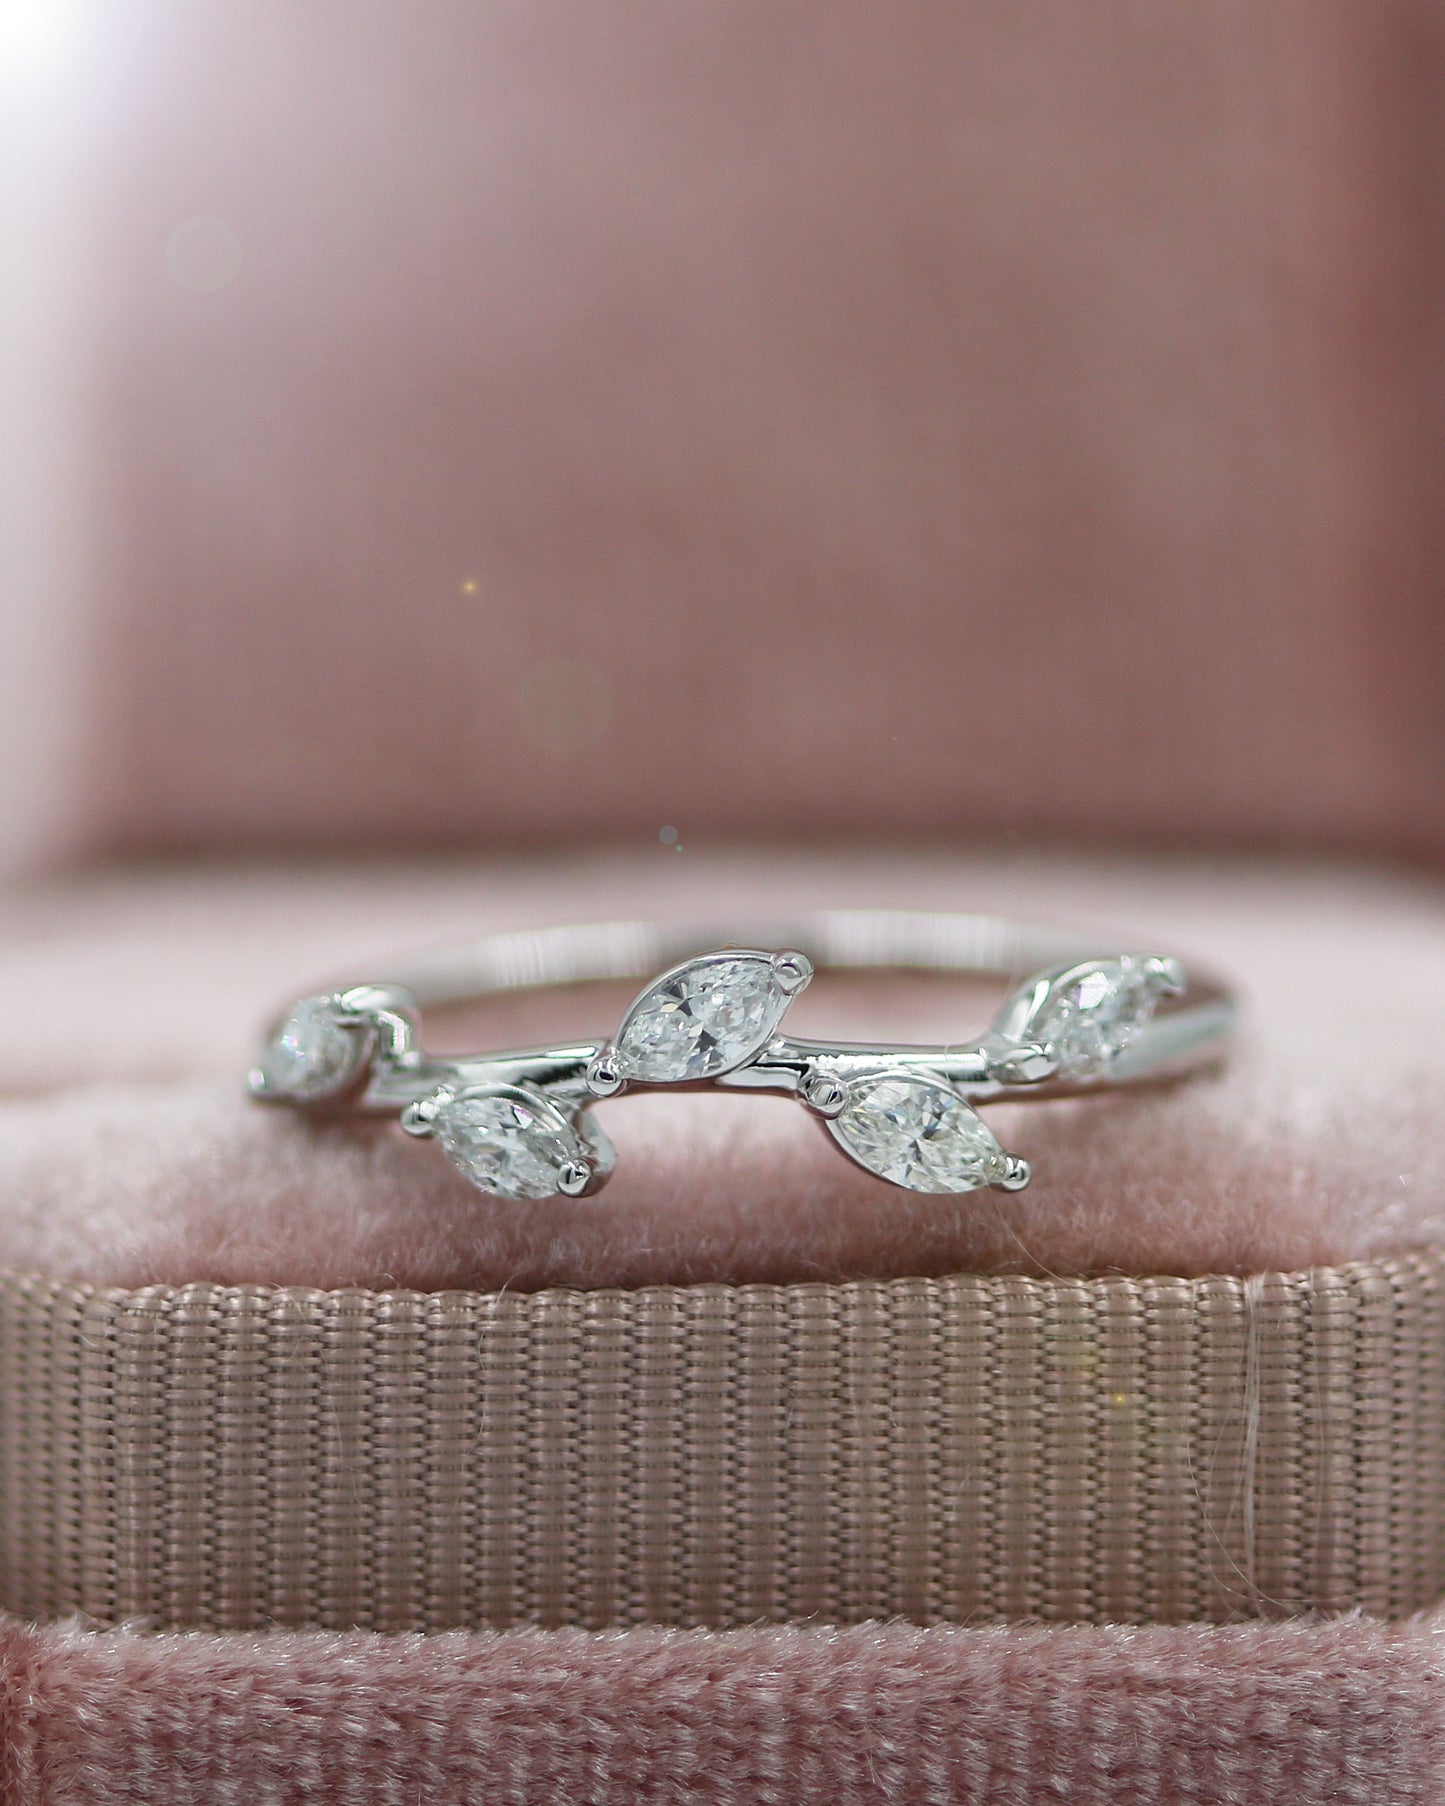 Diamond Leaf Ring